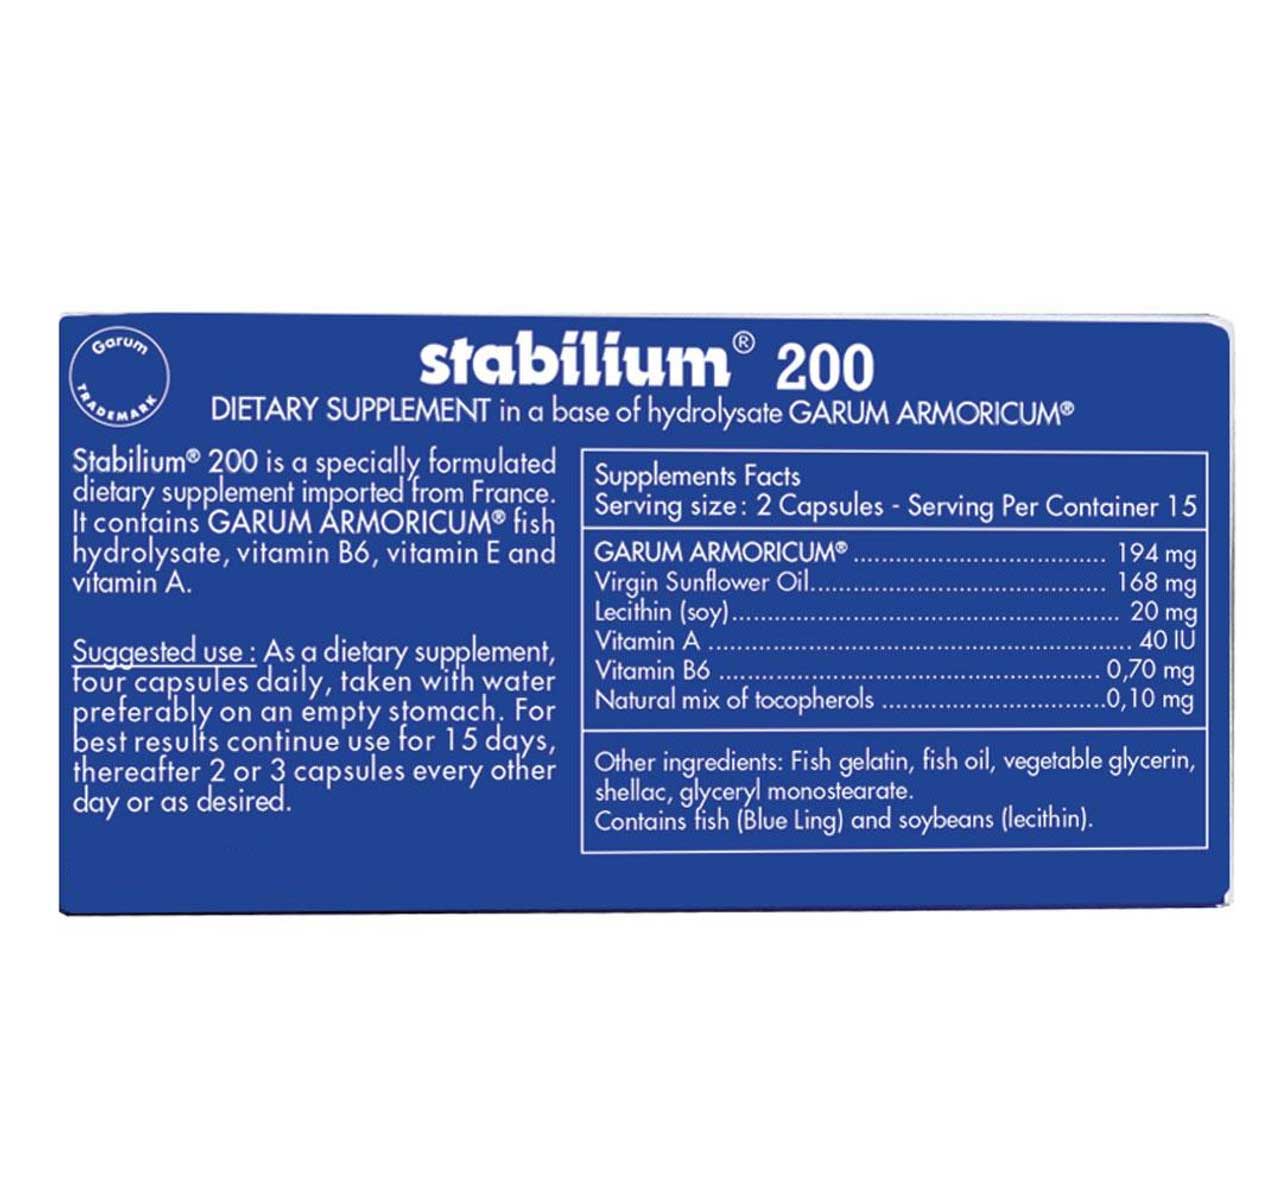 Allergy Research Group Stabilium 200 Garum Armoricum Ingredients 